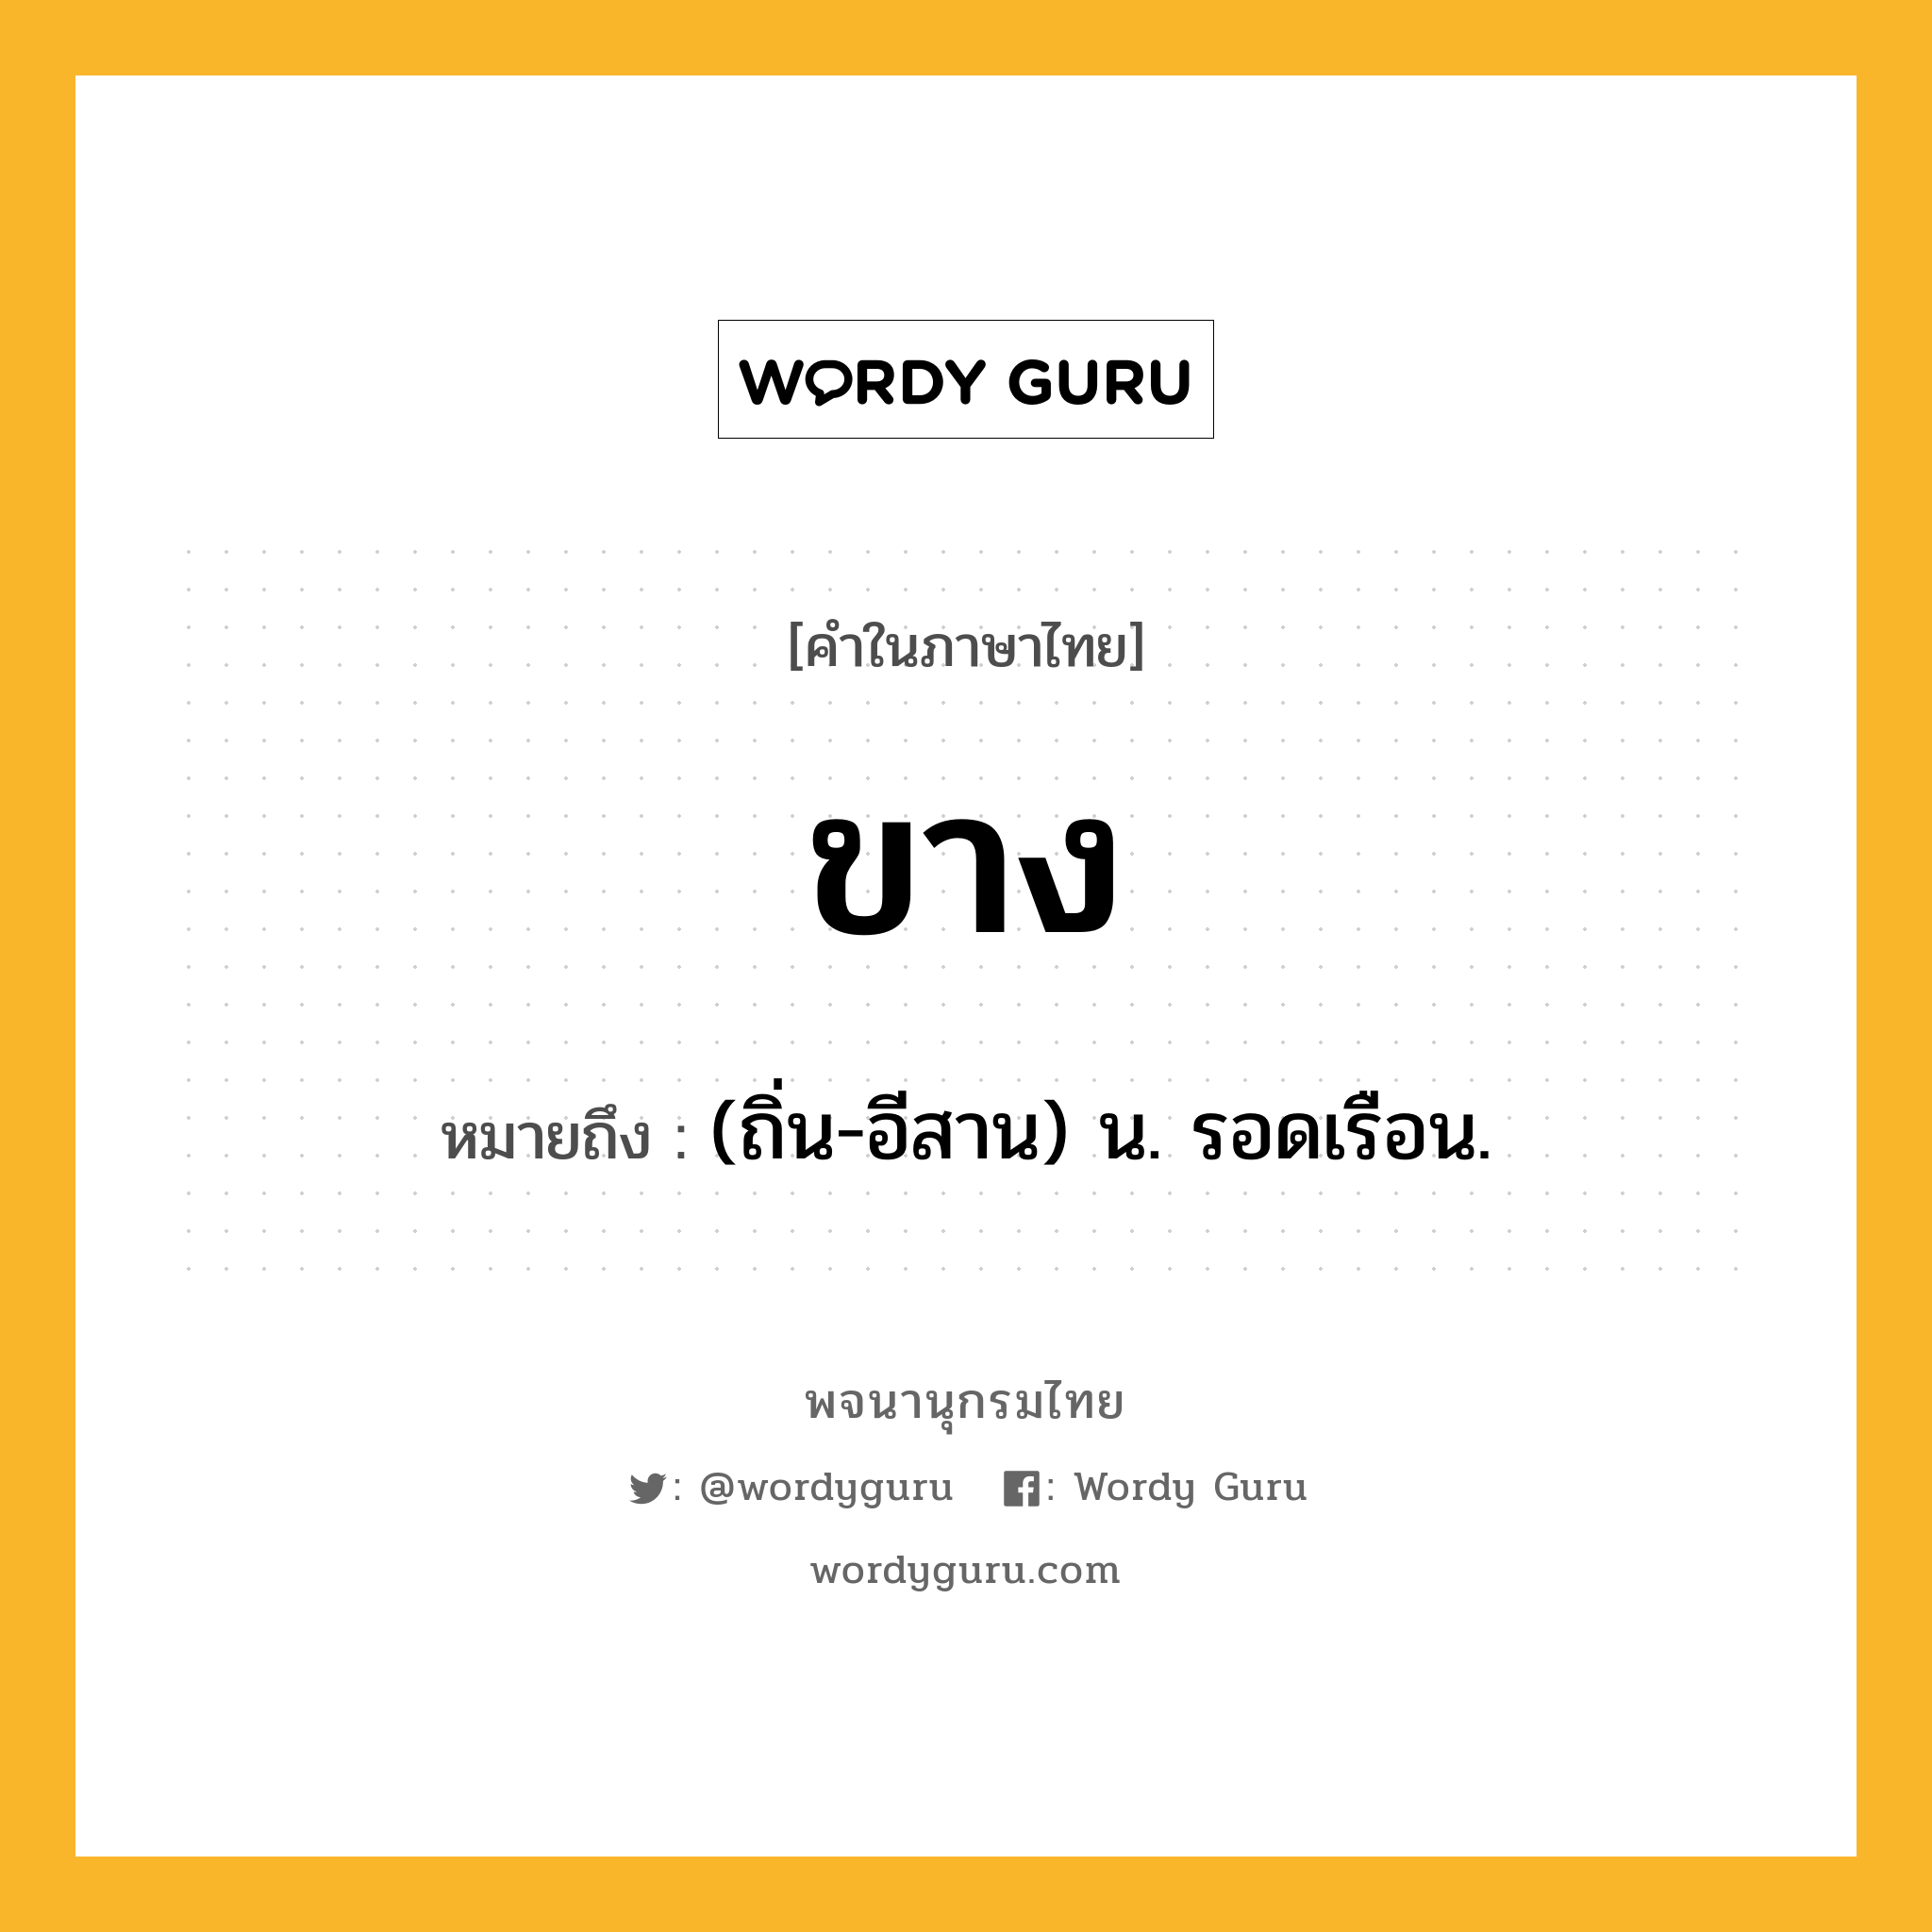 ขาง หมายถึงอะไร?, คำในภาษาไทย ขาง หมายถึง (ถิ่น-อีสาน) น. รอดเรือน.